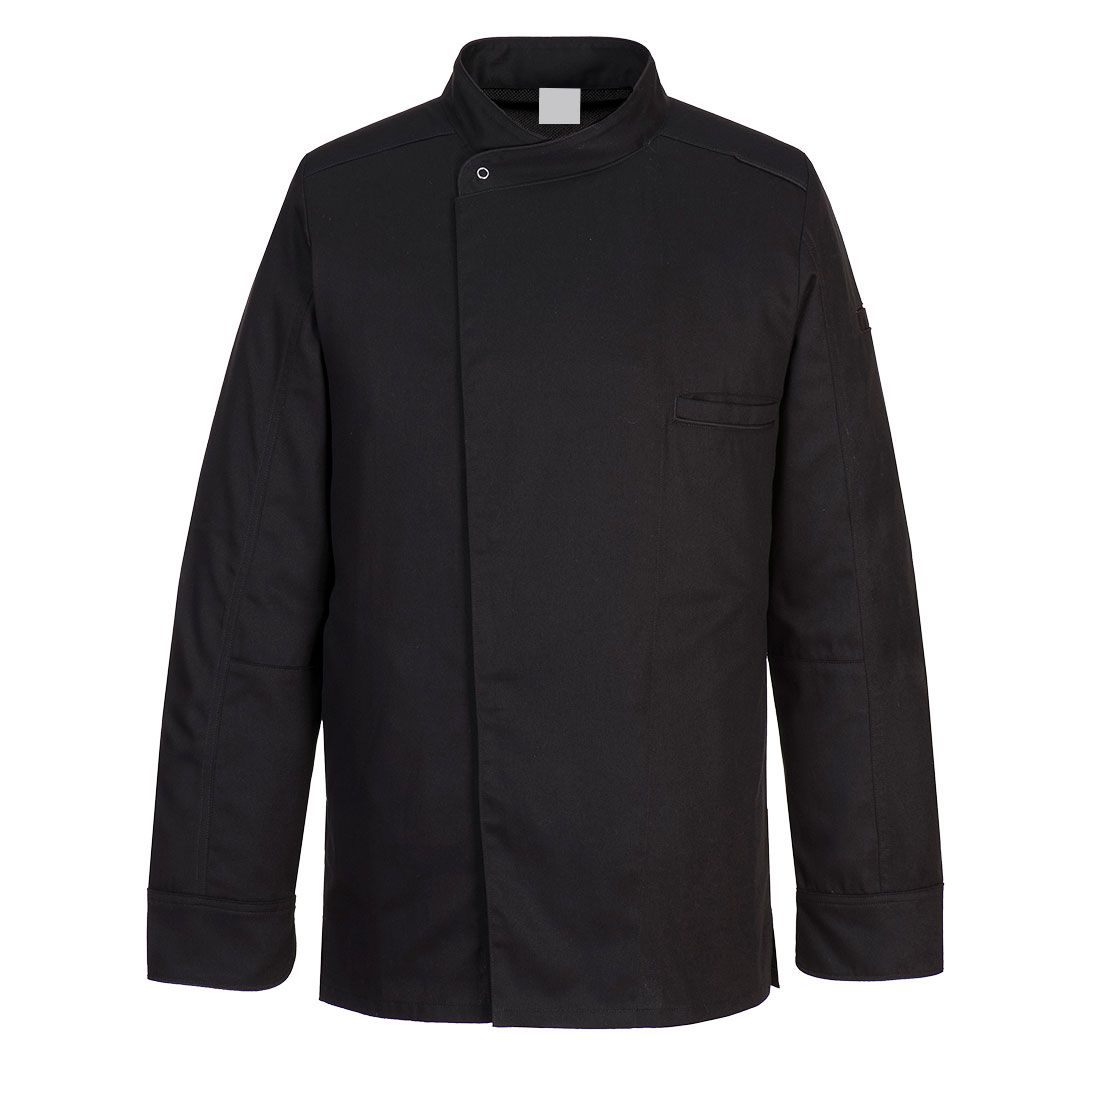 Surrey Chefs Jacket L/S Black